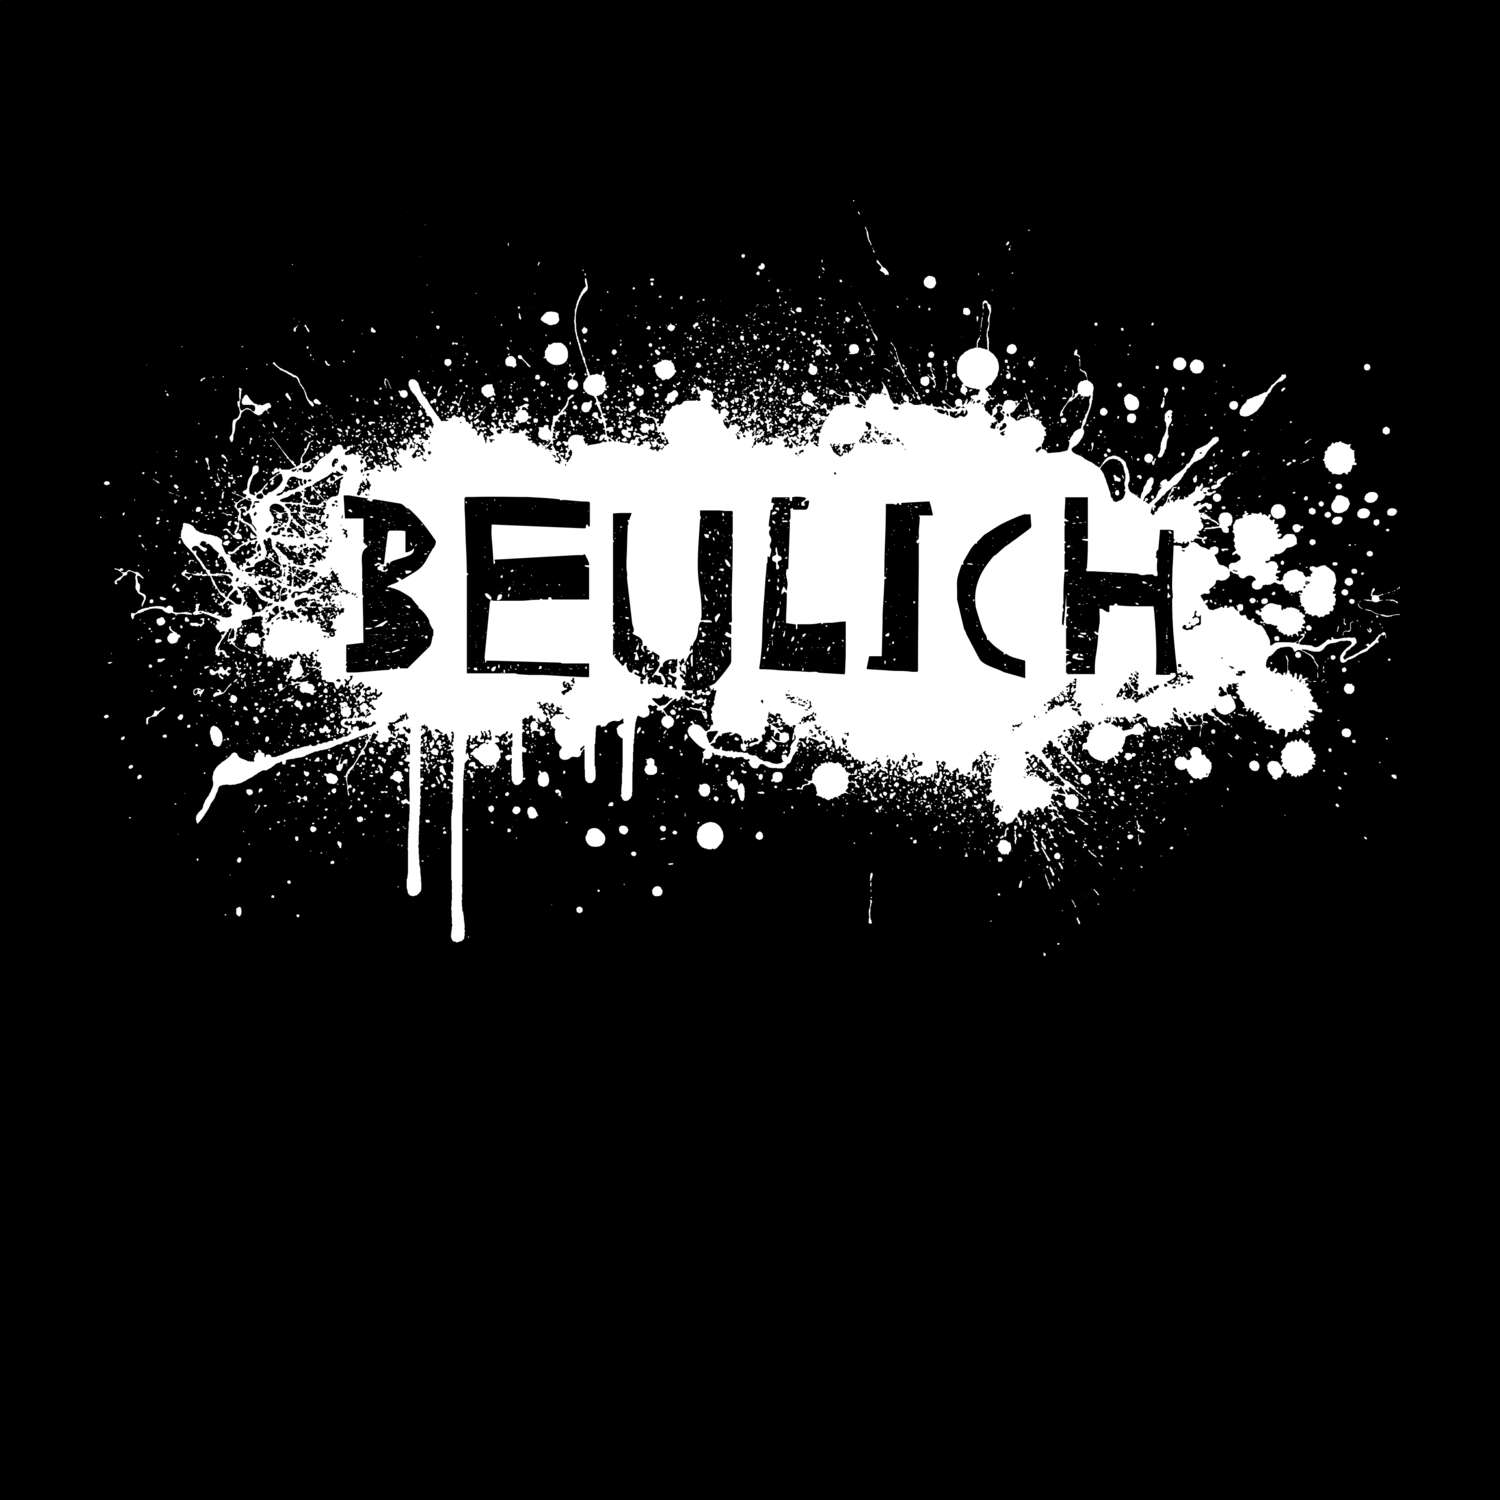 Beulich T-Shirt »Paint Splash Punk«